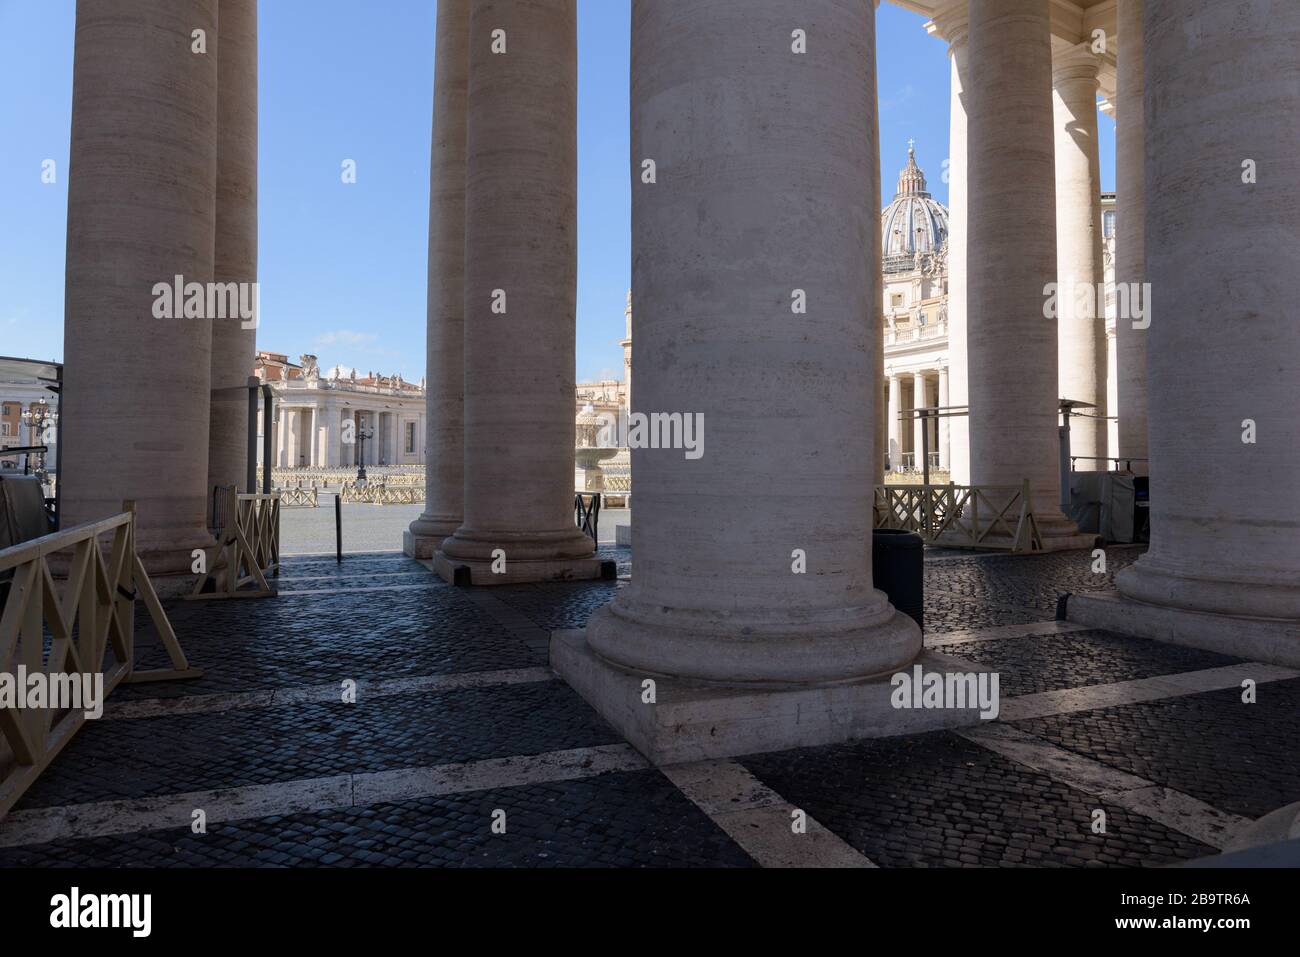 ROME, ITALIE - 12 mars 2020: Aucun accès n'est autorisé à la place Saint-Pierre, maintenant déserte. Aujourd'hui, le gouvernement italien a décrété un verrouillage national, le wi Banque D'Images